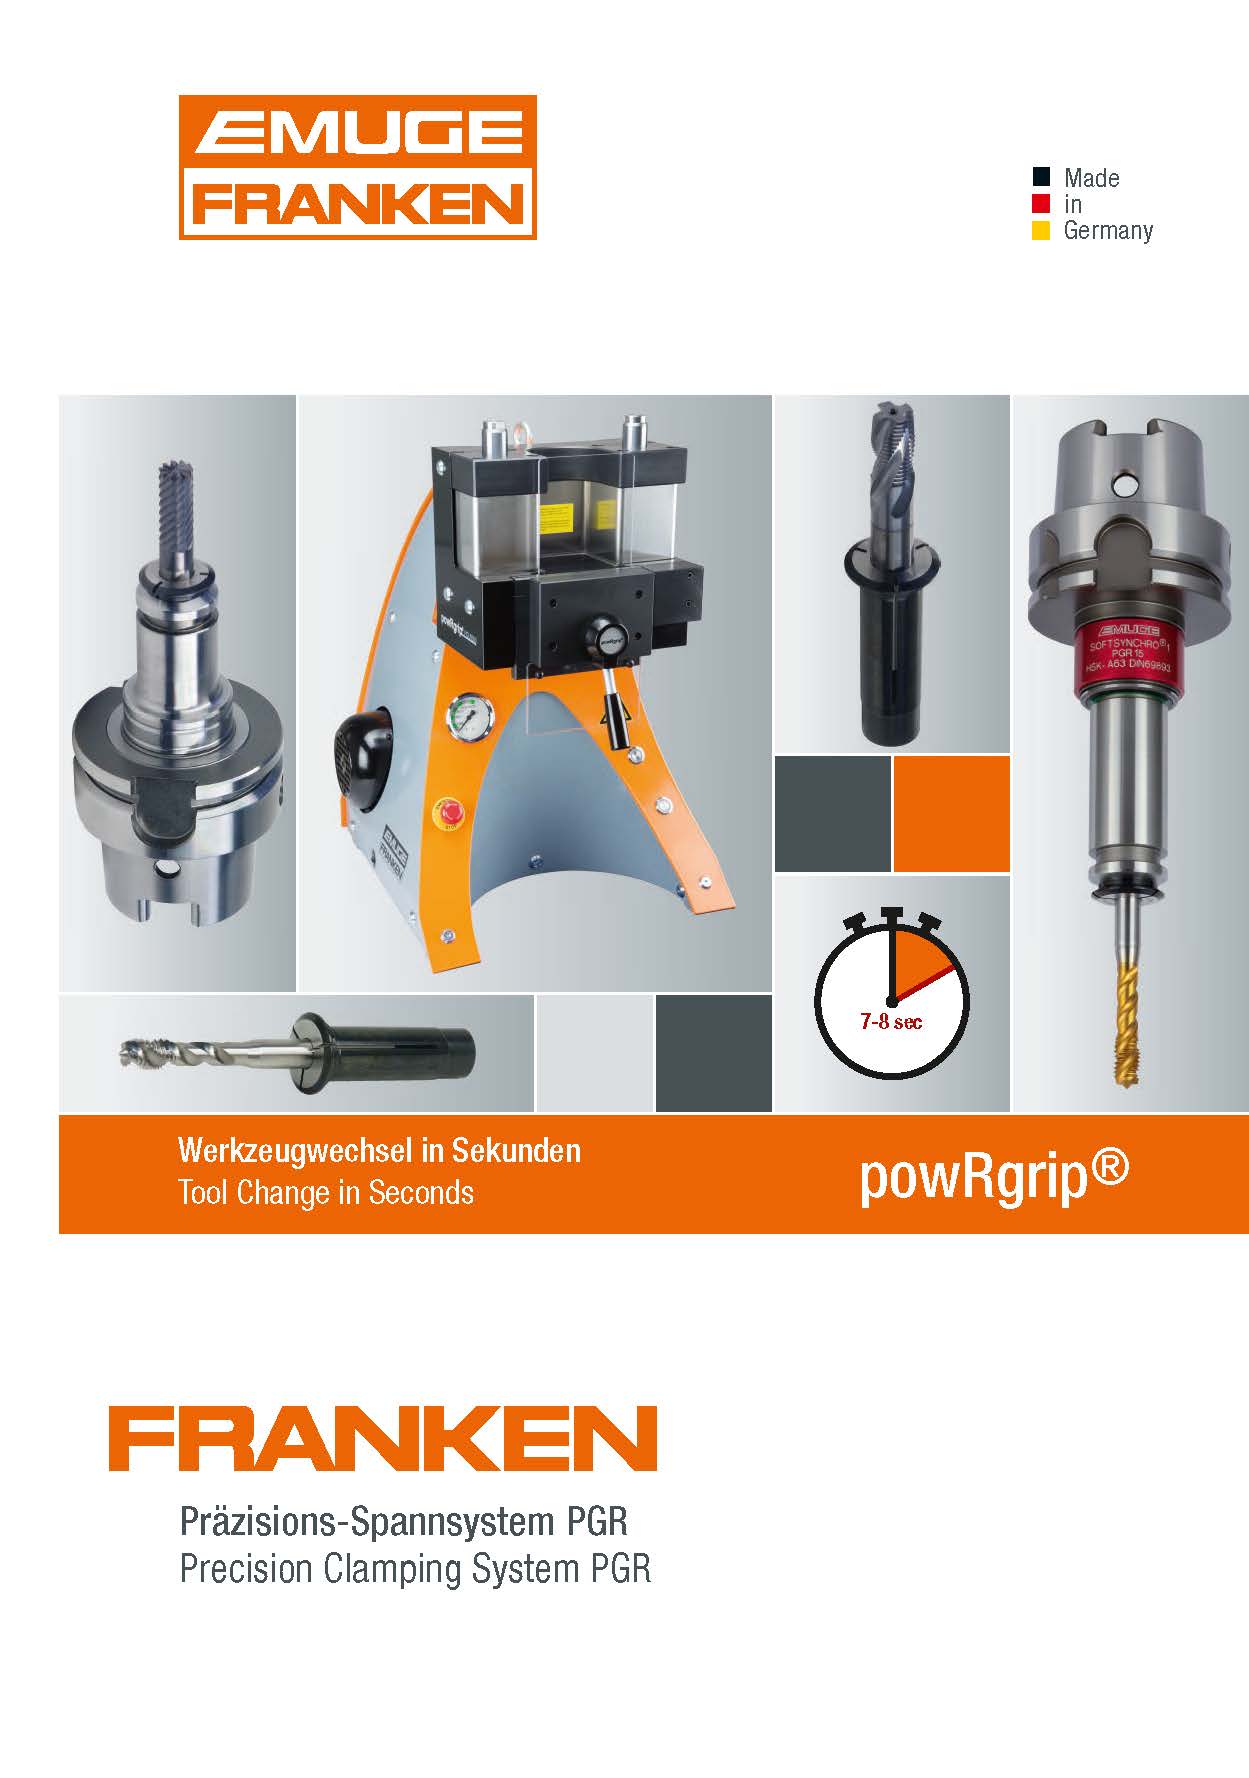 emuge-franken/konoi/emuge-franken-precision-clamping-system-pgr